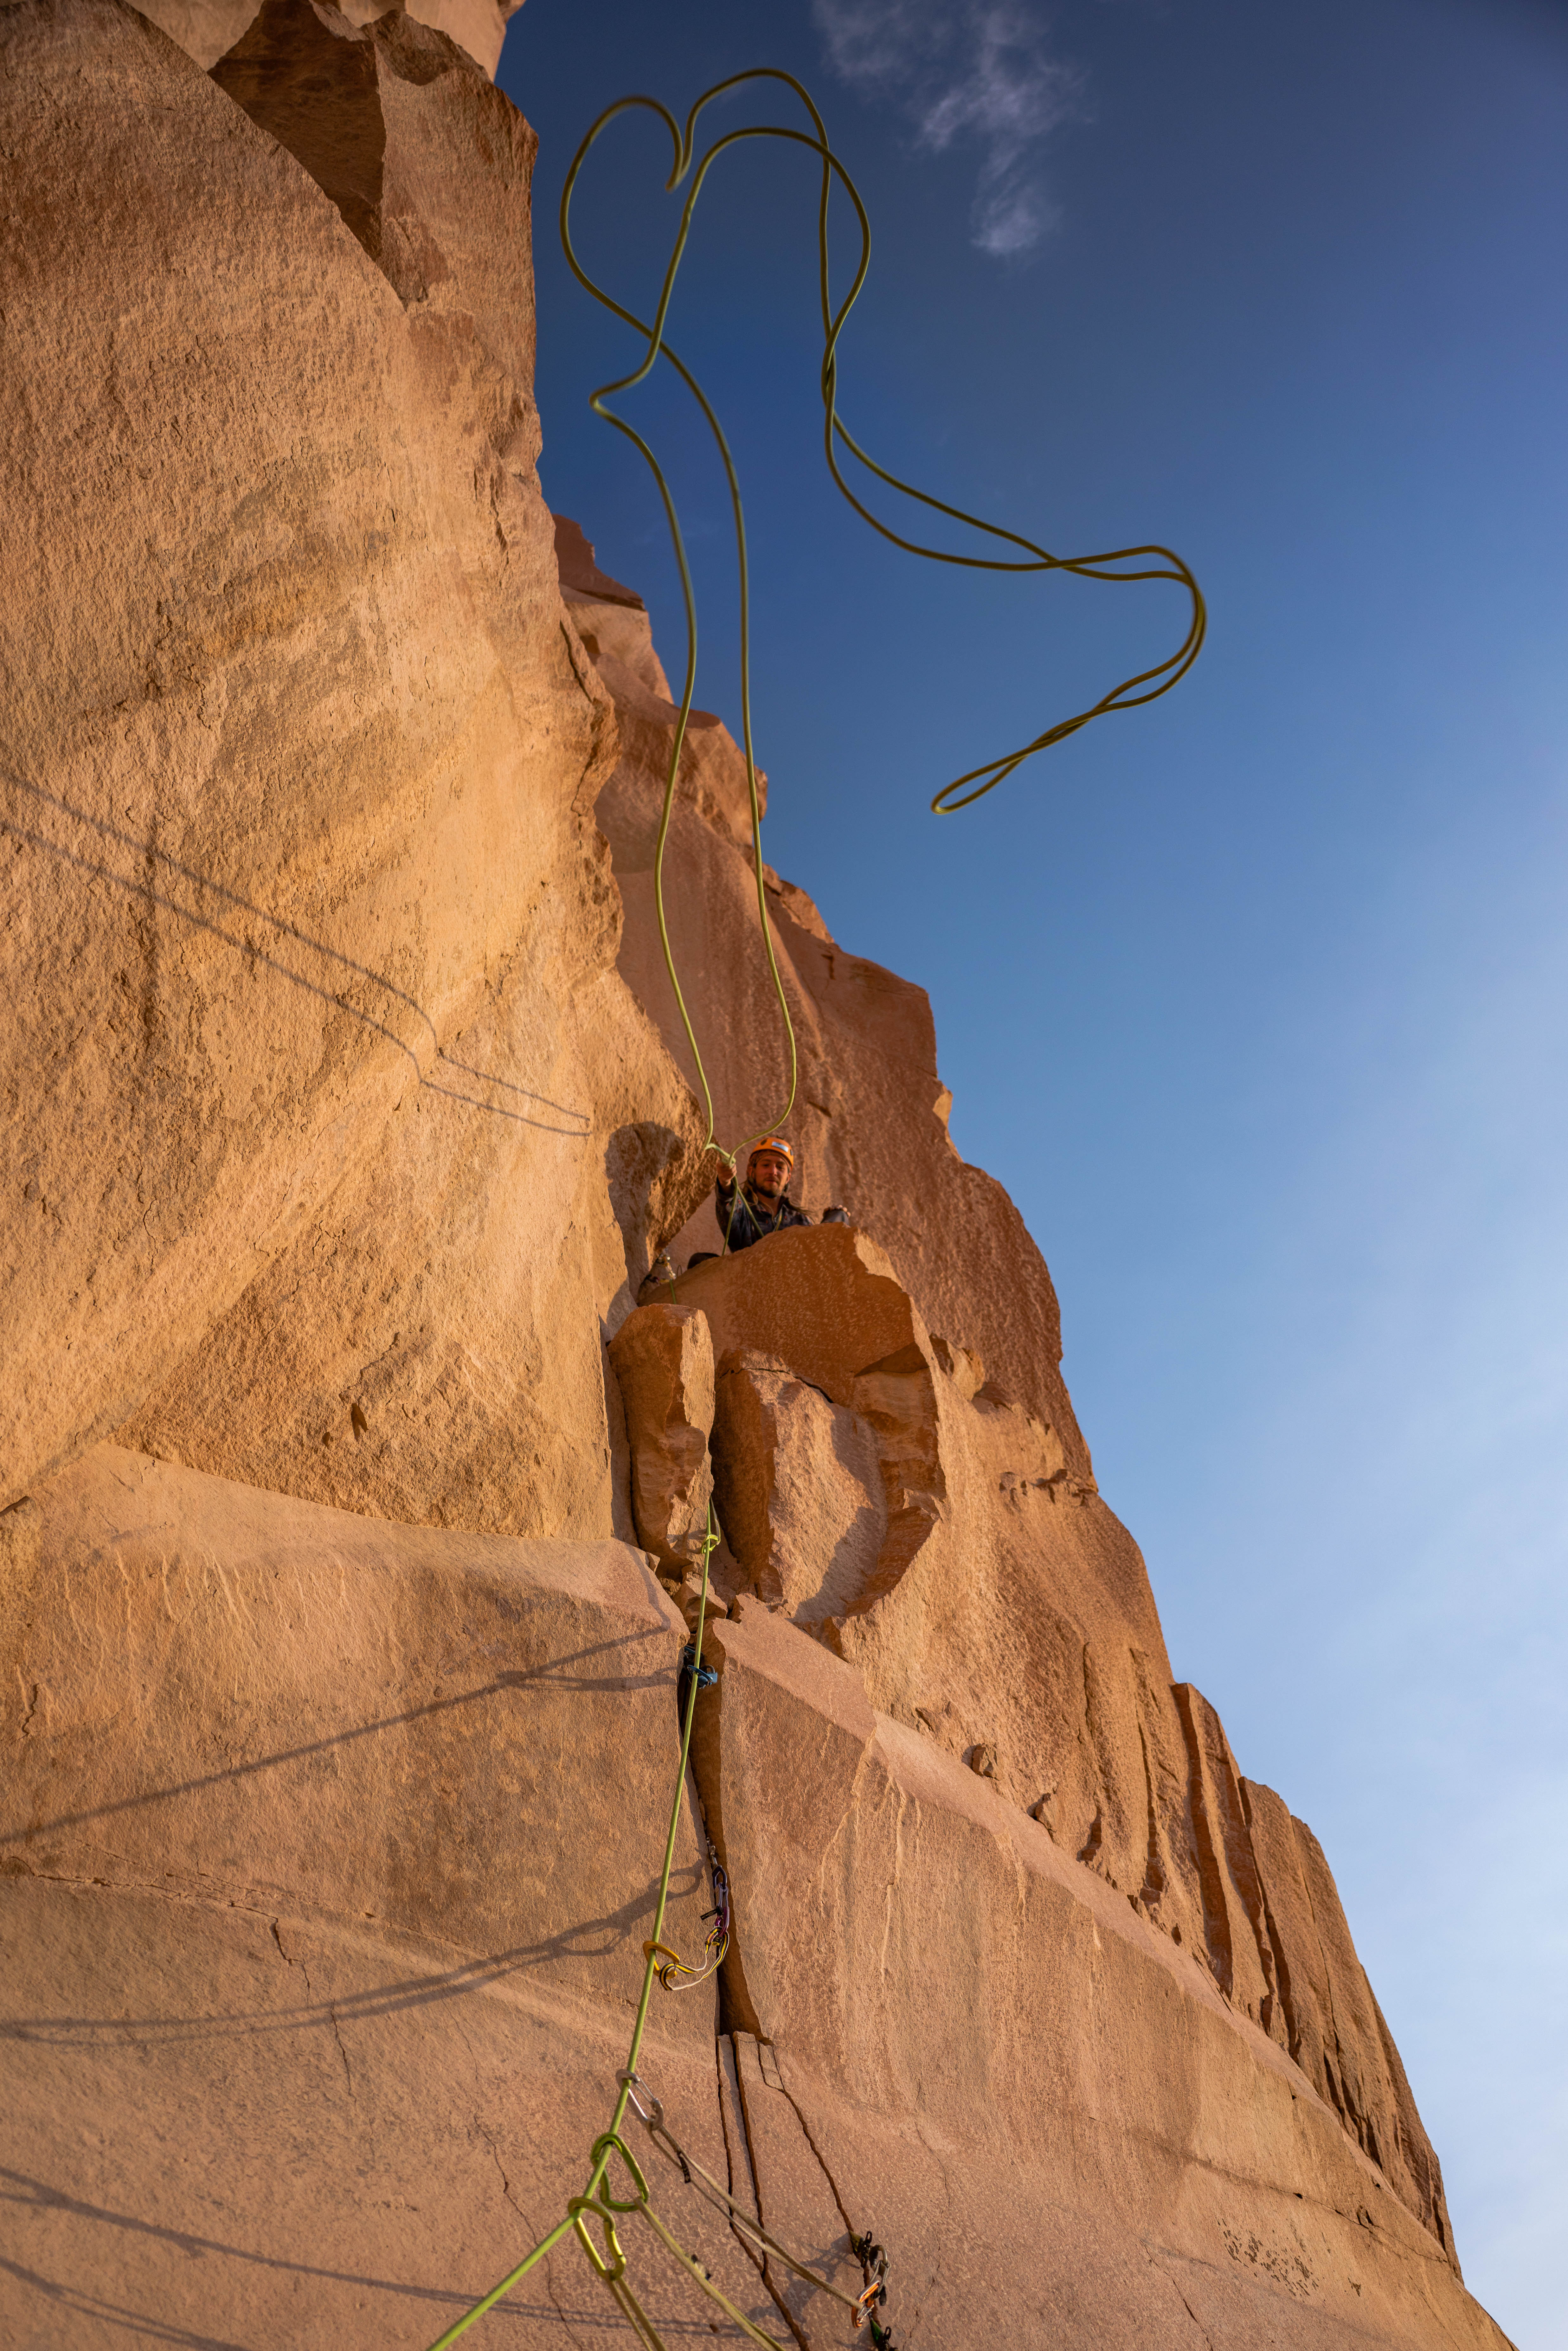 Una persona che si arrampica, lanciando la corda al compagno nel Cile settentrionale